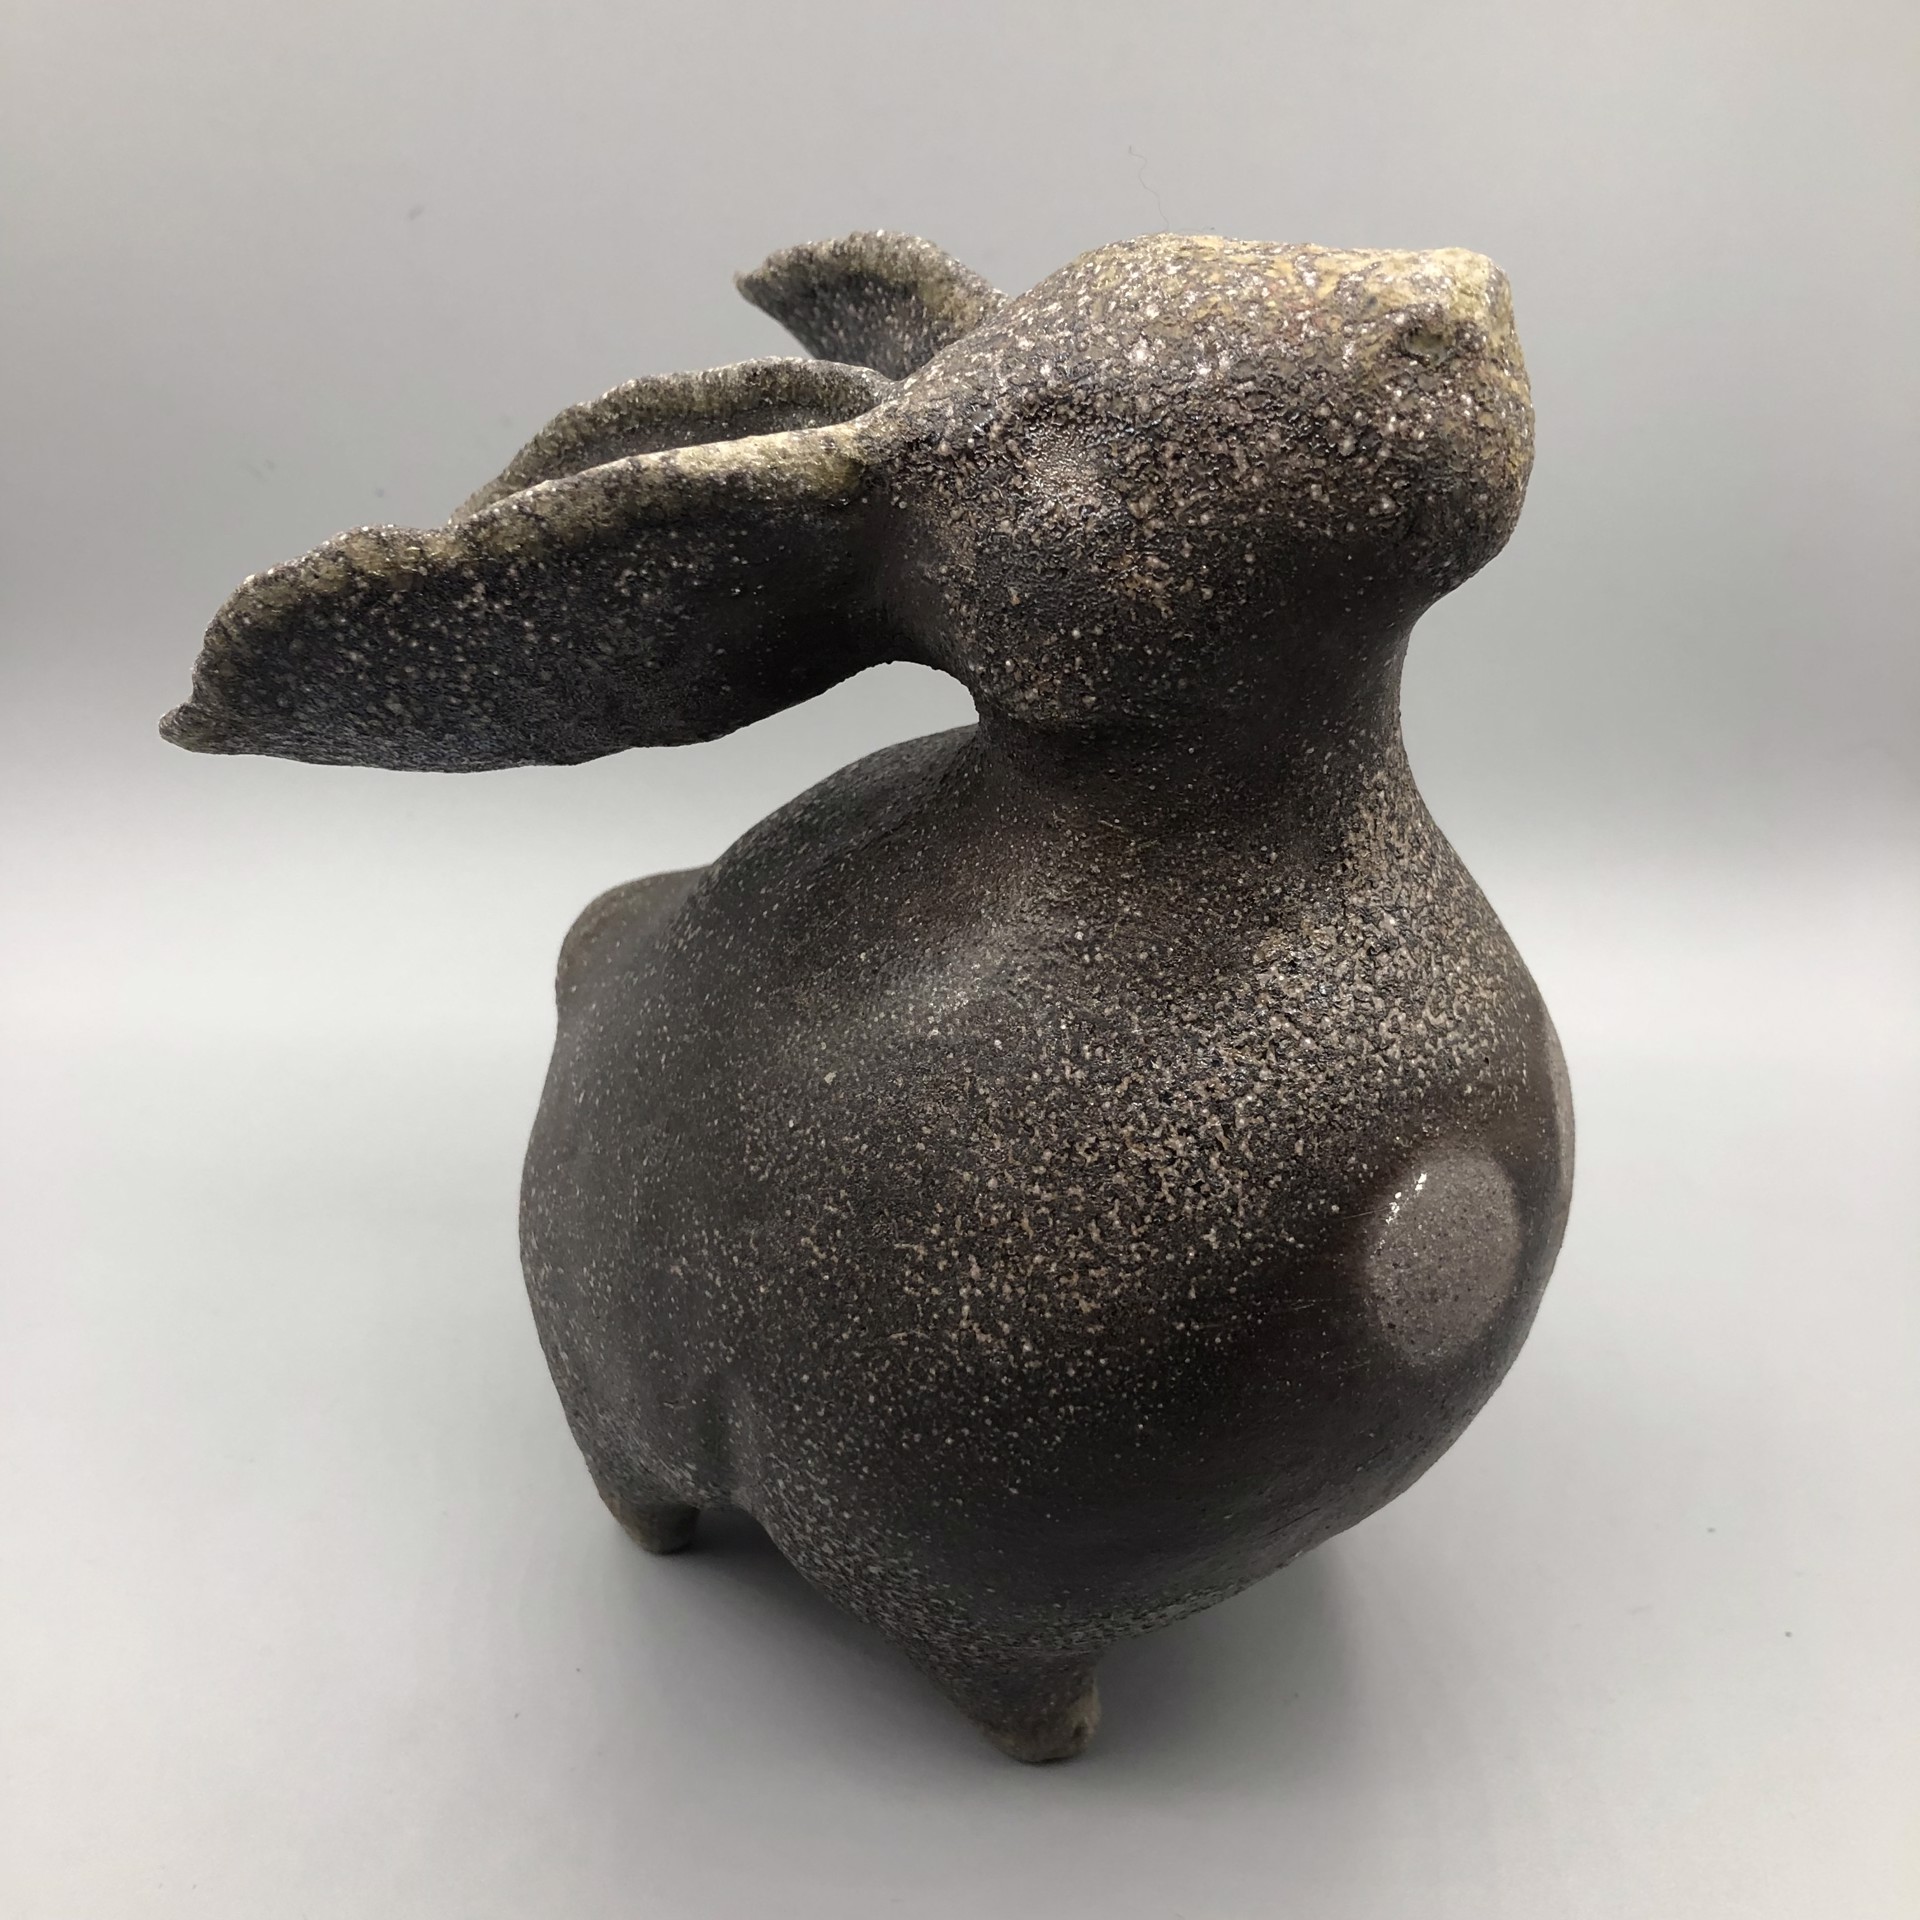 Dusk Rabbit by Christopher St. John